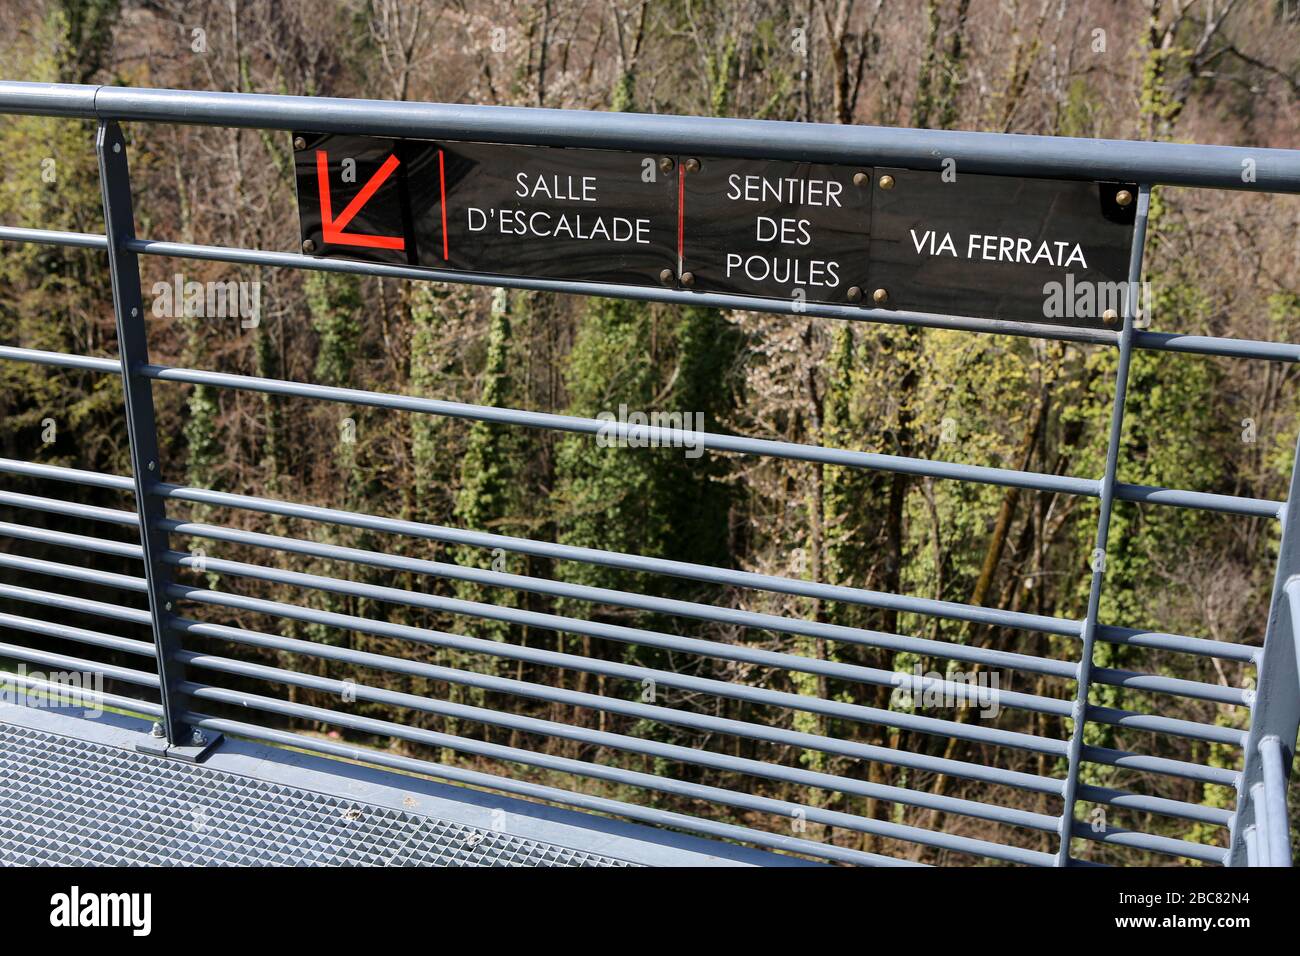 Salle d'Escalade. Sentier des POULES. Vía Ferrata. Panneau sur une barrière. Saint-Gervais-les-Bains. Alta Saboya. Francia. Foto de stock